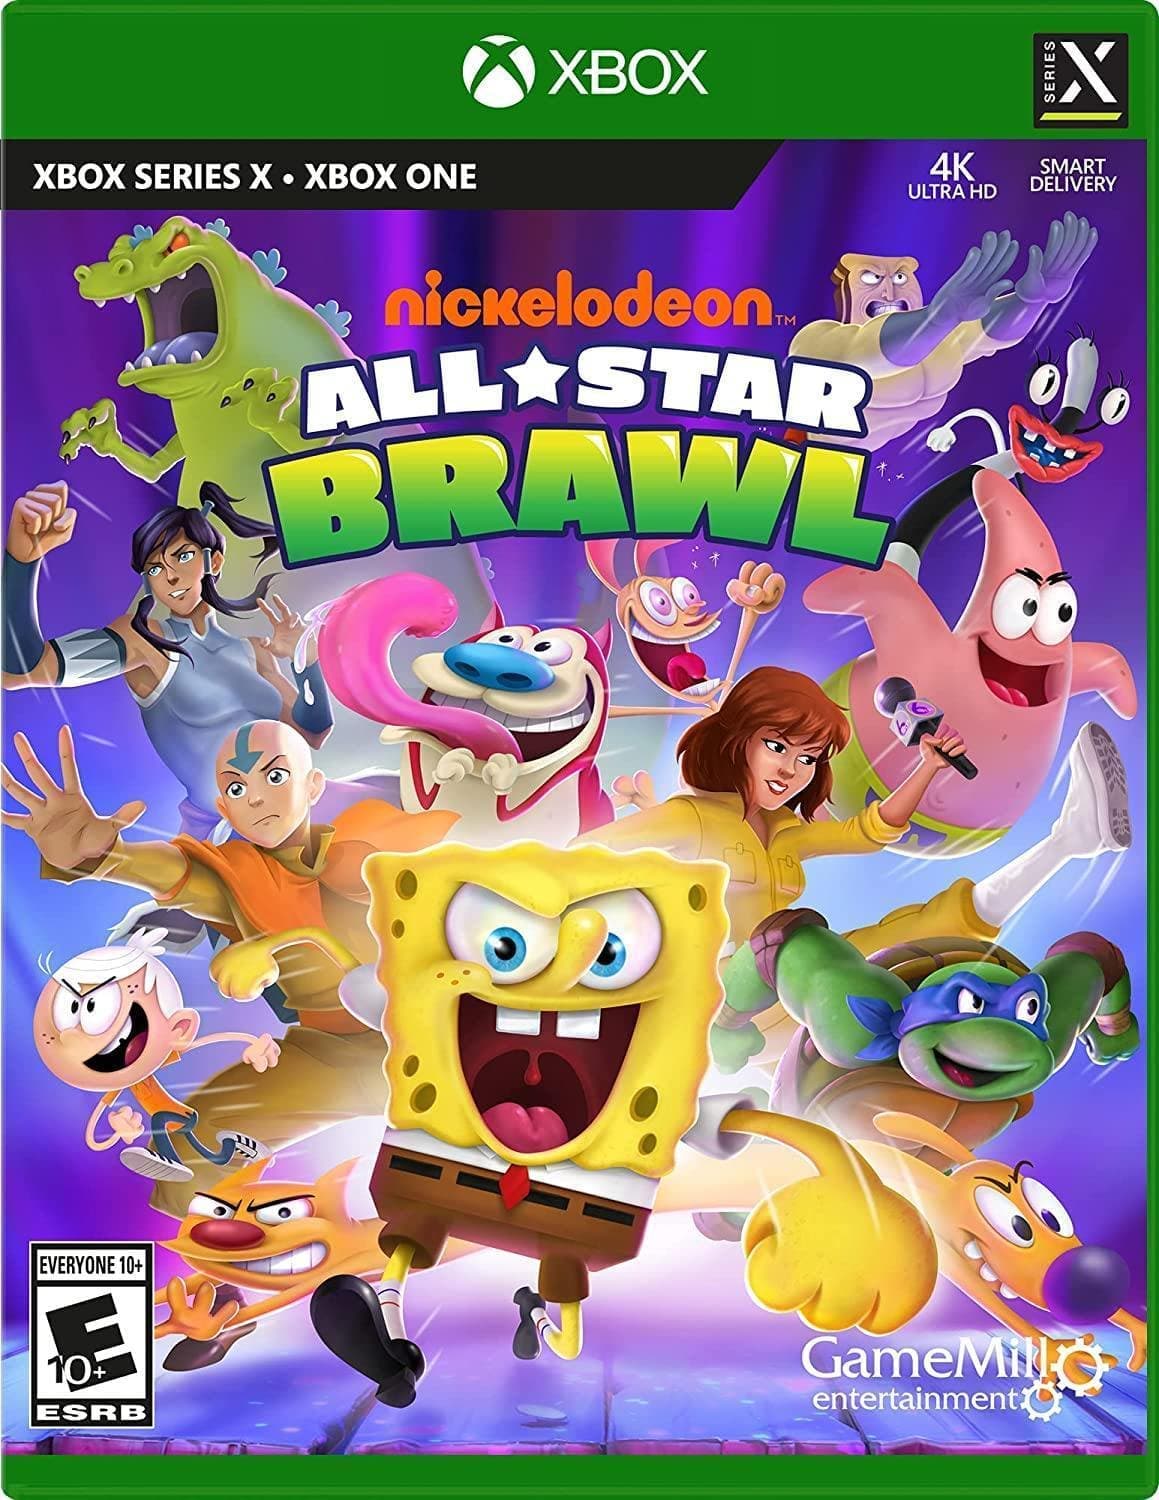 Nickelodeon All-Star Brawl - Xbox One & Xbox Series X/S - EXON - גיימינג ותוכנות - משחקים ותוכנות למחשב ולאקס בוקס!